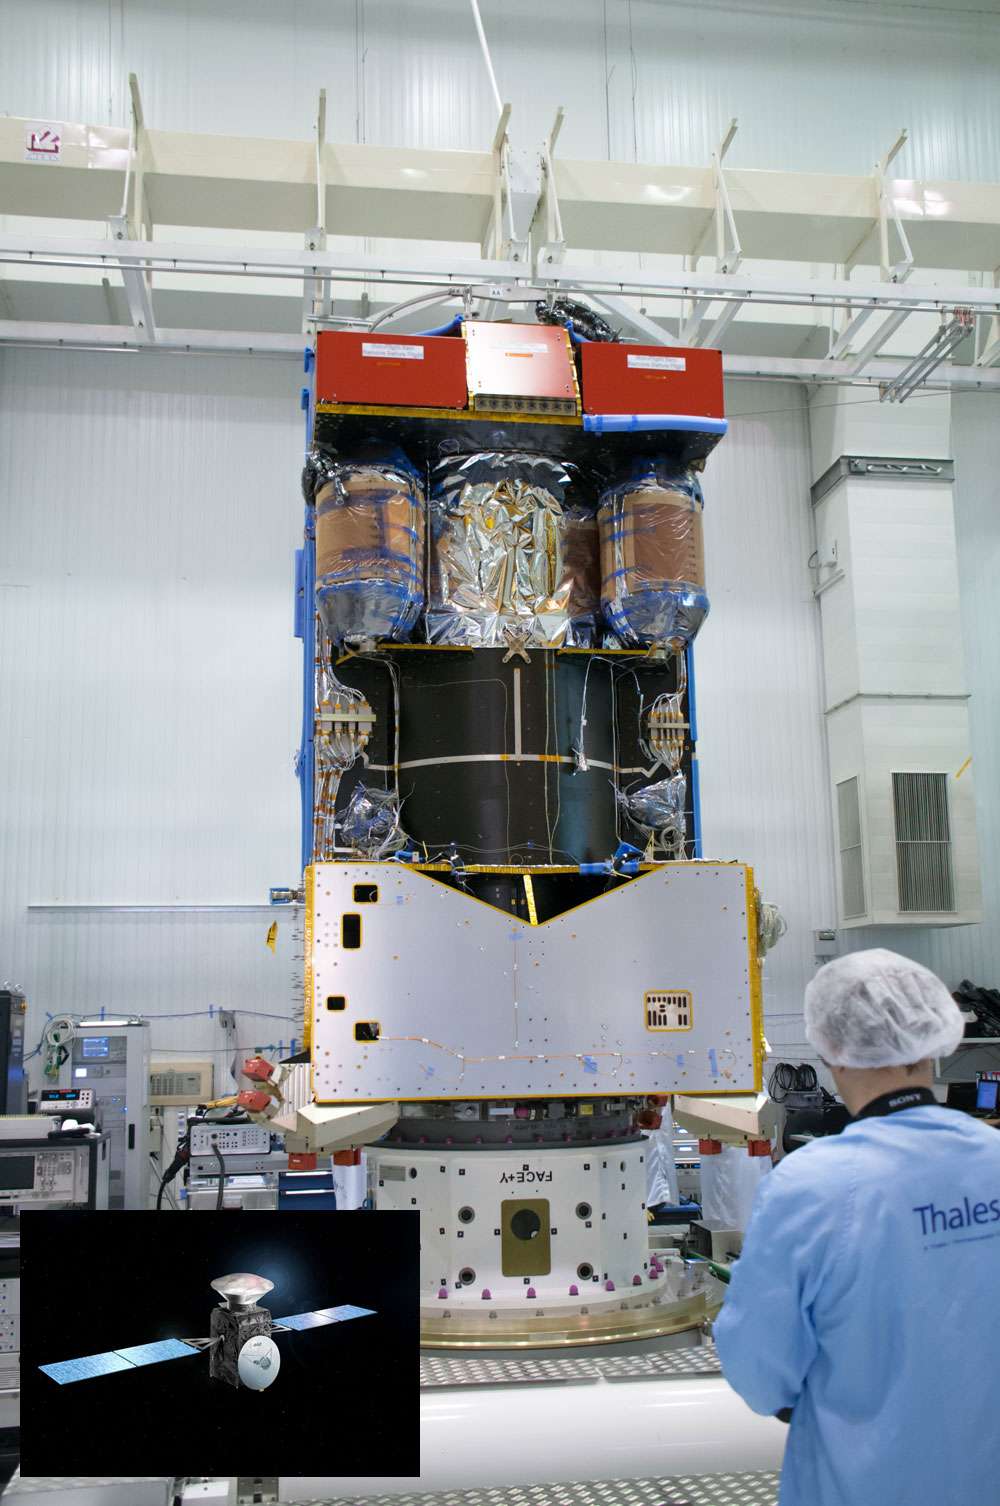  La sonde Trace Gaz Orbiter, actuellement en cours de réalisation. En surimposition, la vue d'artiste montre la mission ExoMars 2016 avec la sonde portant le démonstrateur de rentrée atmosphérique (la capsule Schiaparelli) qui se posera sur Mars. © Esa